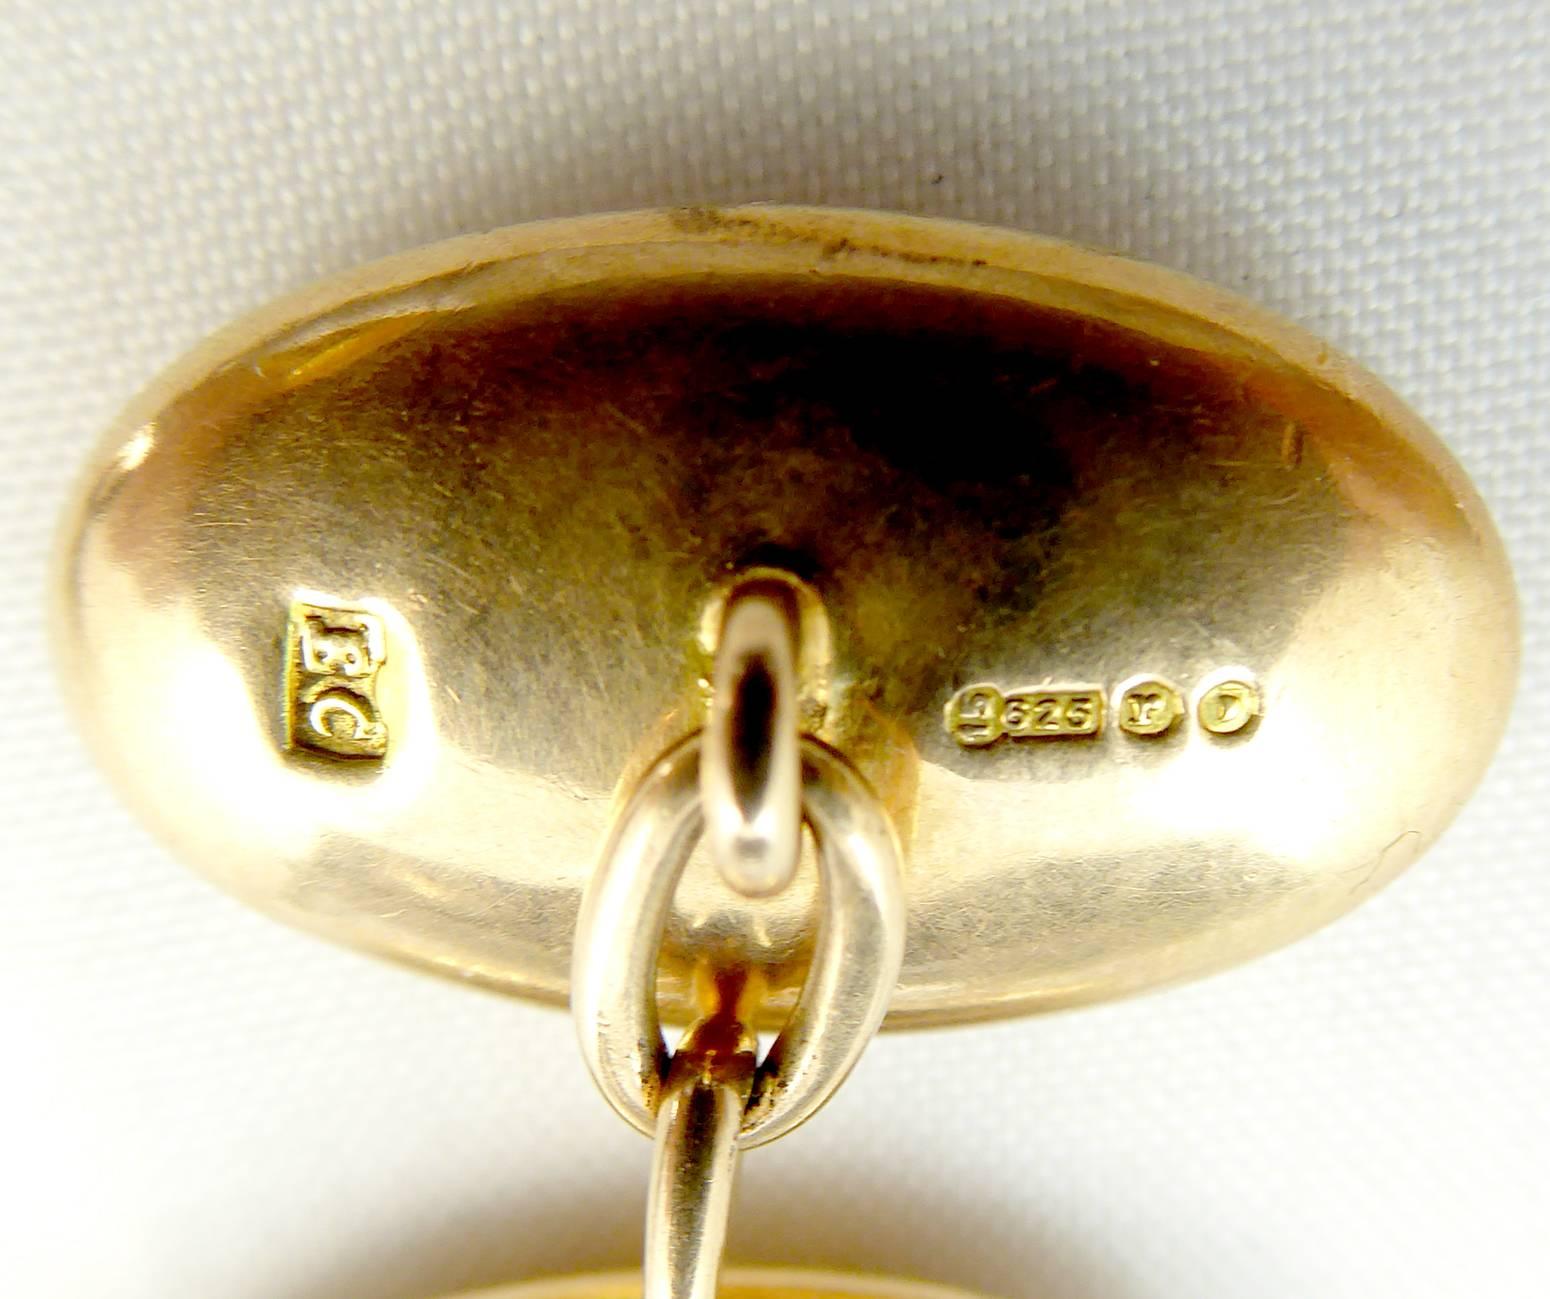 Antique 15 Carat Gold Cufflinks, Hallmarked London, 1912 1